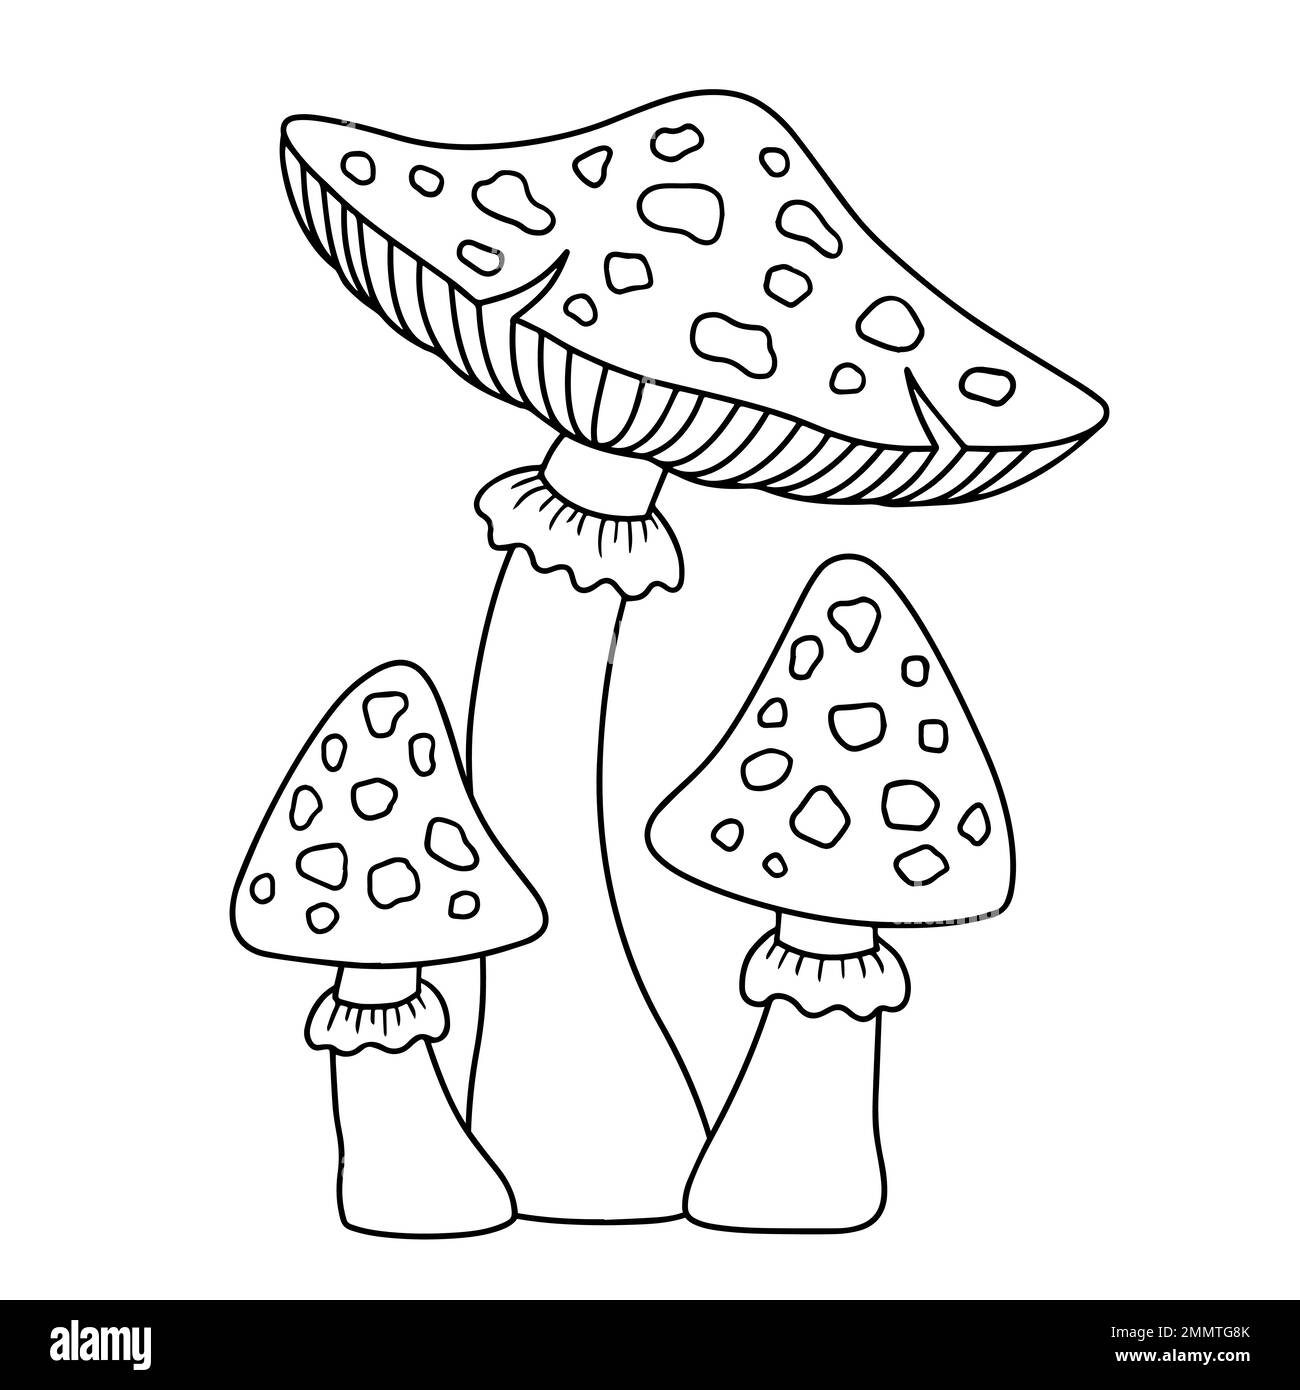 Vektorfarbbuch-Seite. Schwarz-Weiß-Illustration einer Gruppe von Amanita-Pilzen Stock Vektor